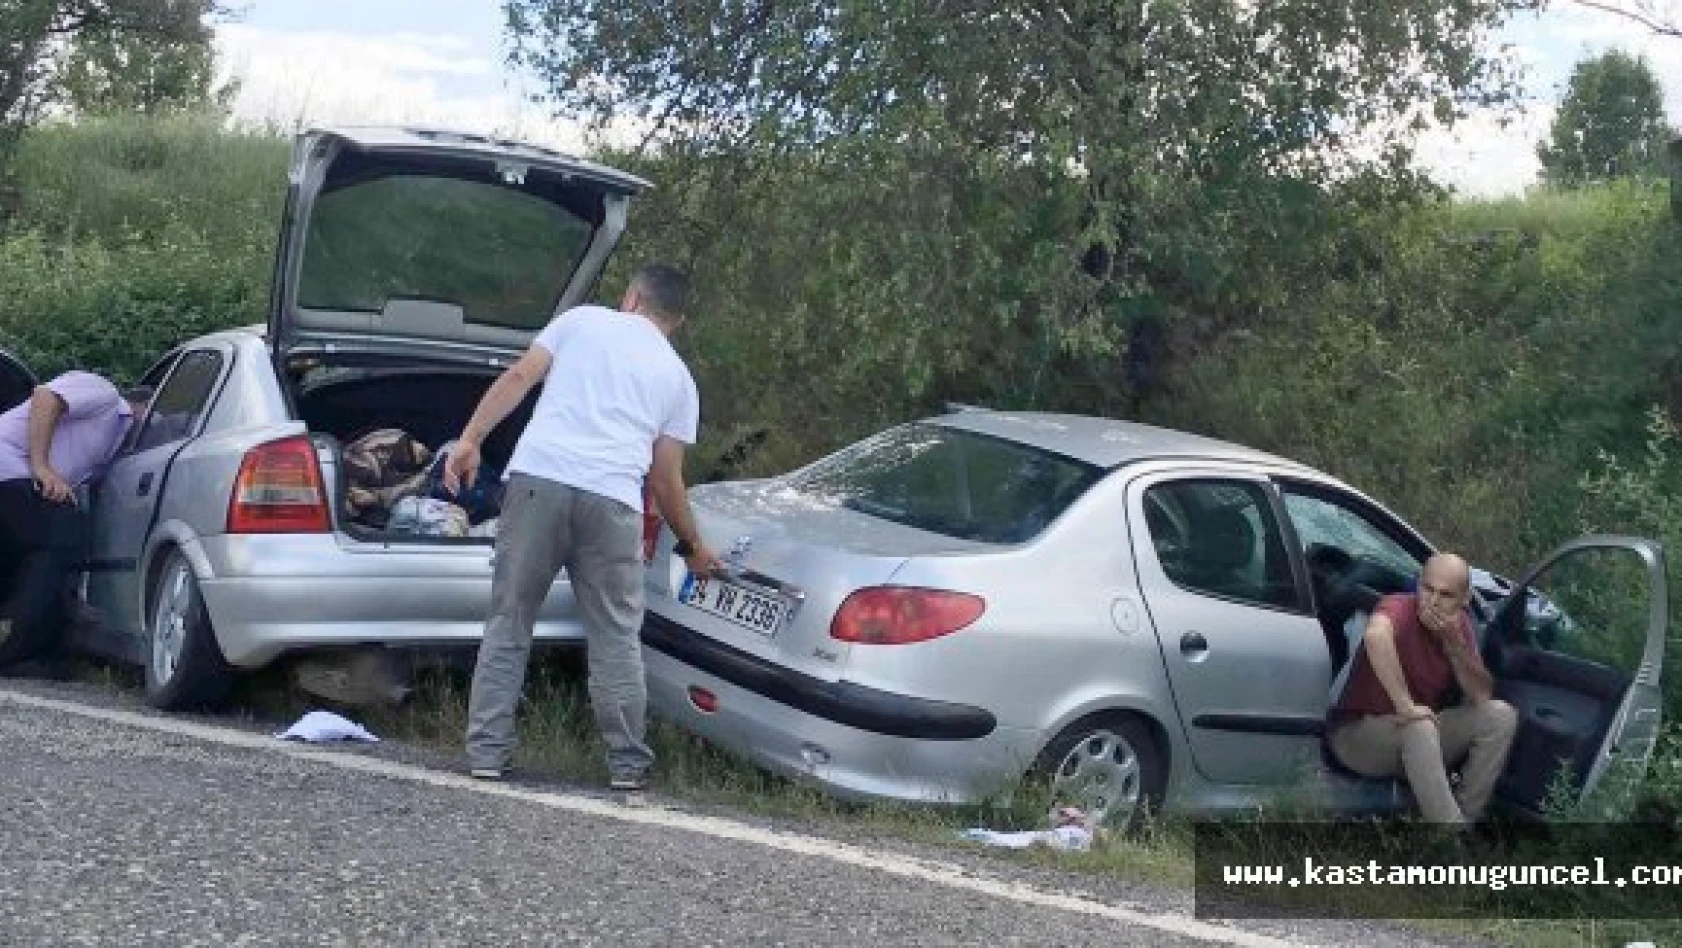 Kastamonu'da otomobiller çarpıştı: 1 ölü, 2 yaralı